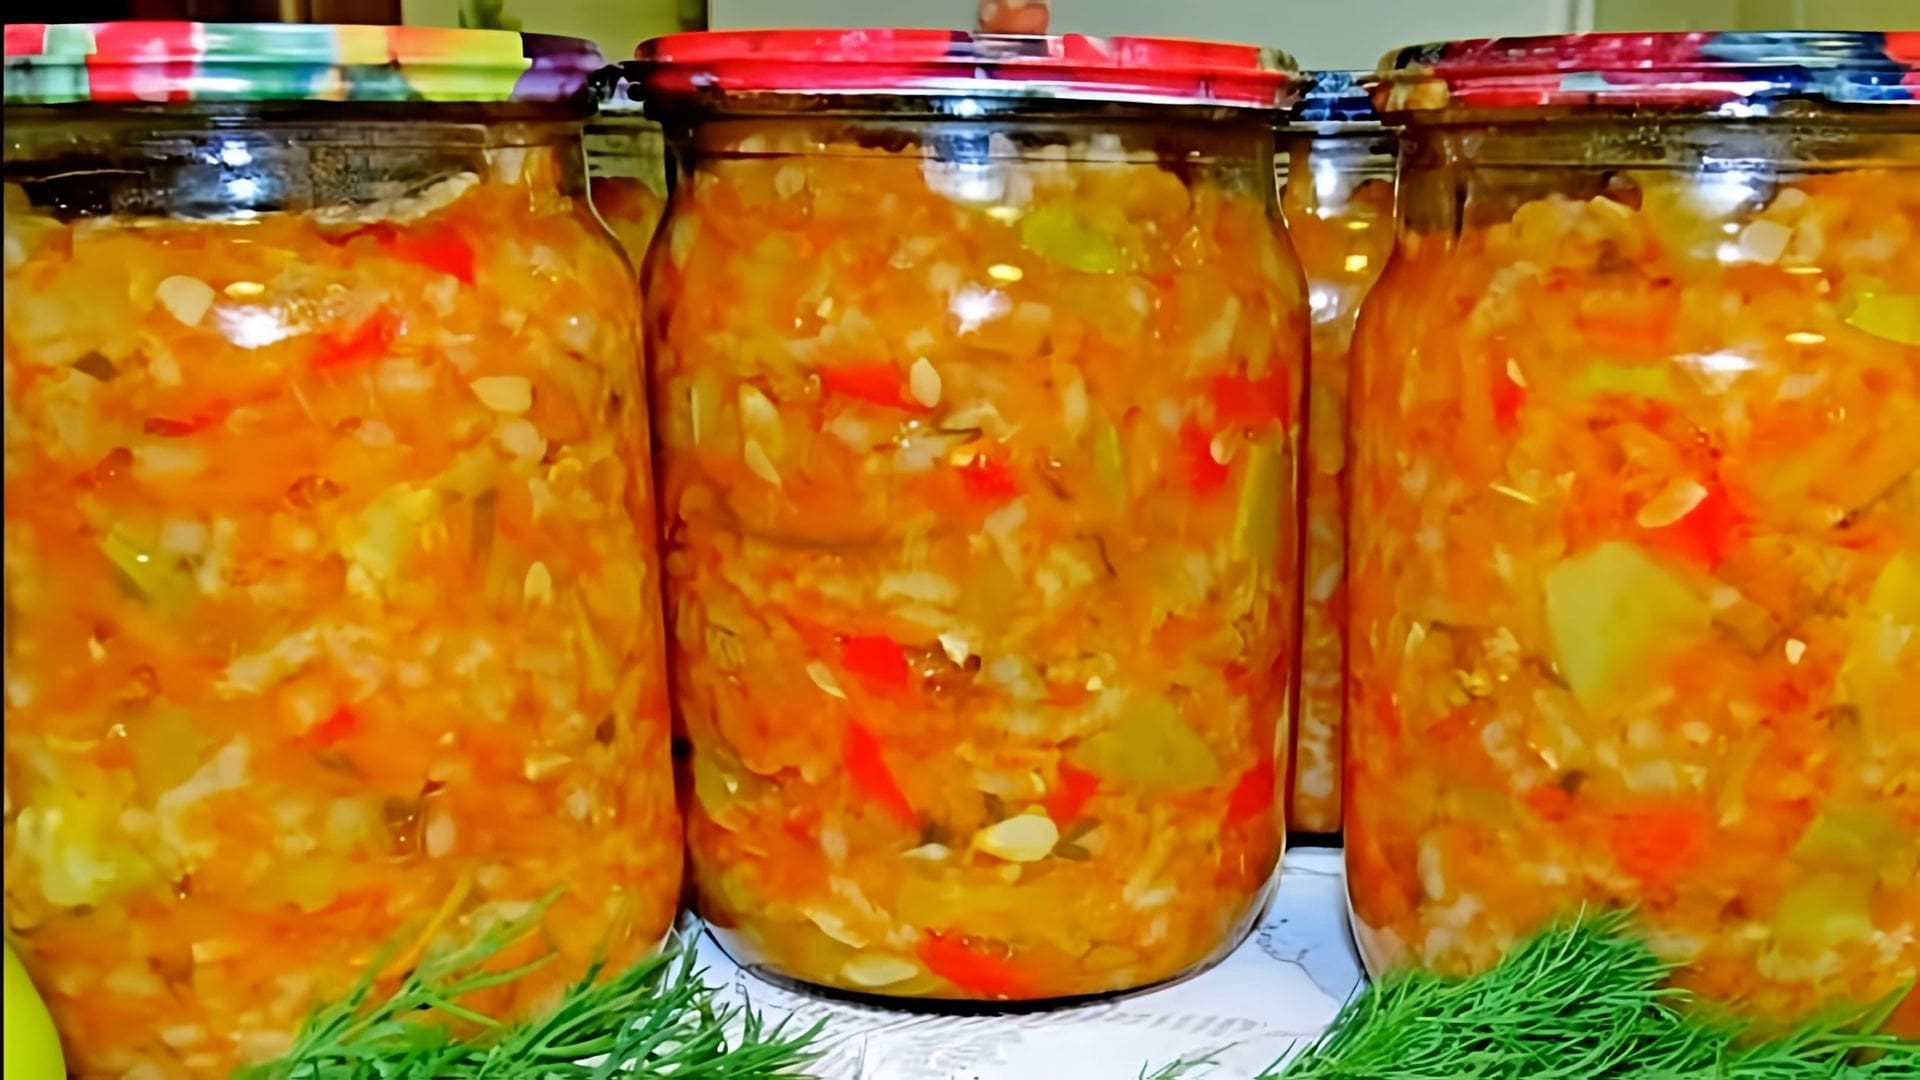 Видео рецепт зимнего салата из цуккини, риса, овощей и томатного соуса, который можно закрыть для последующего употребления